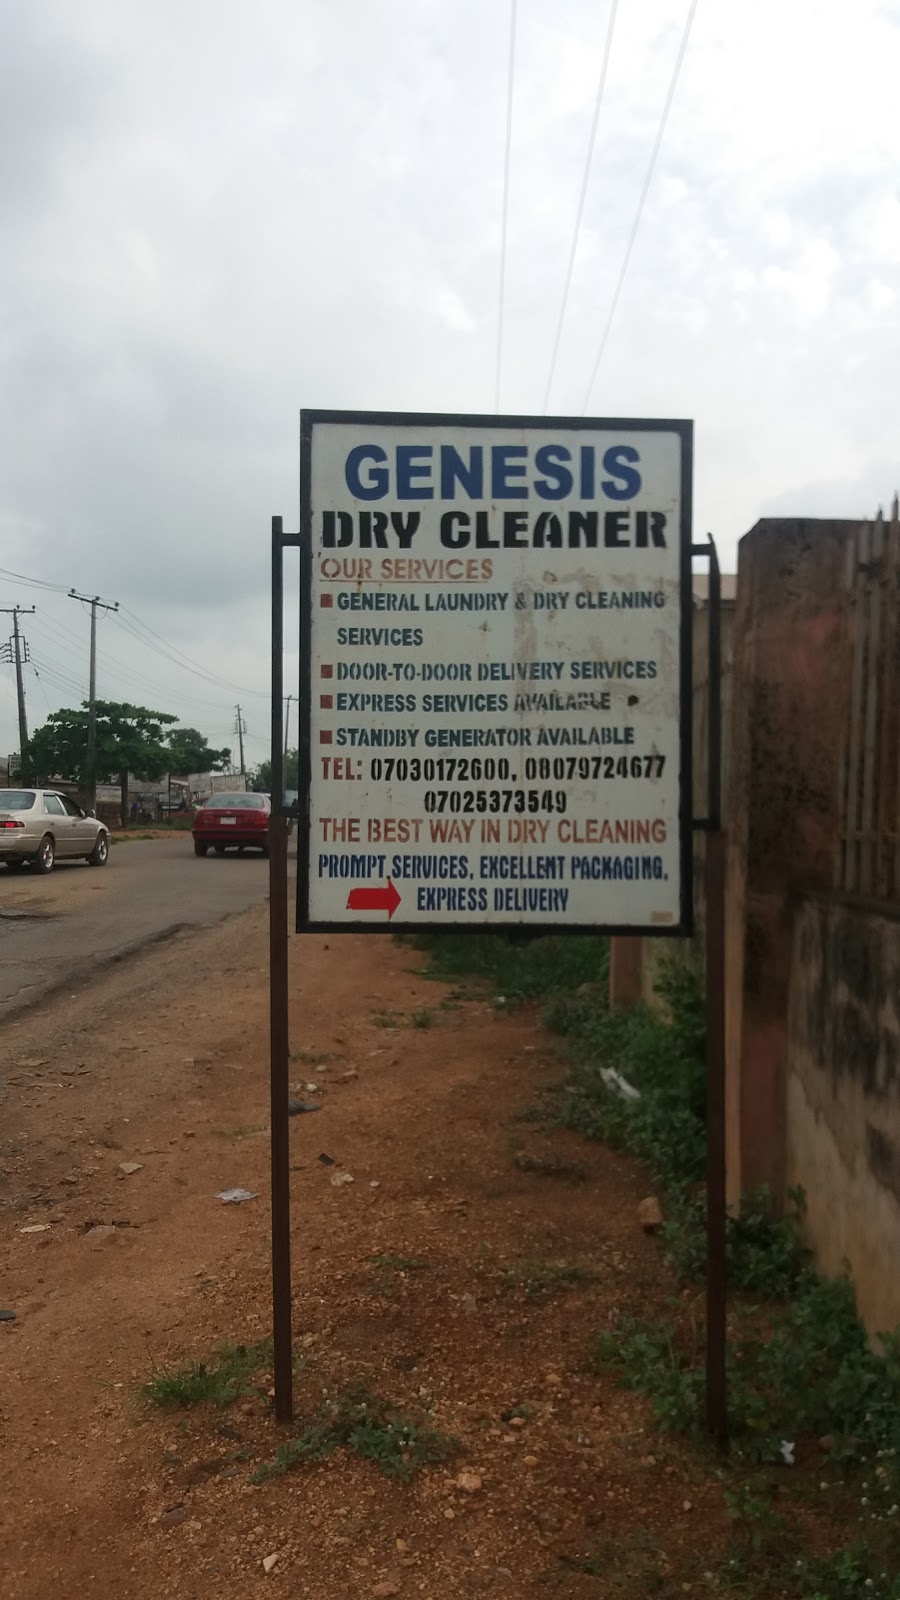 Genesis Dry Cleaner